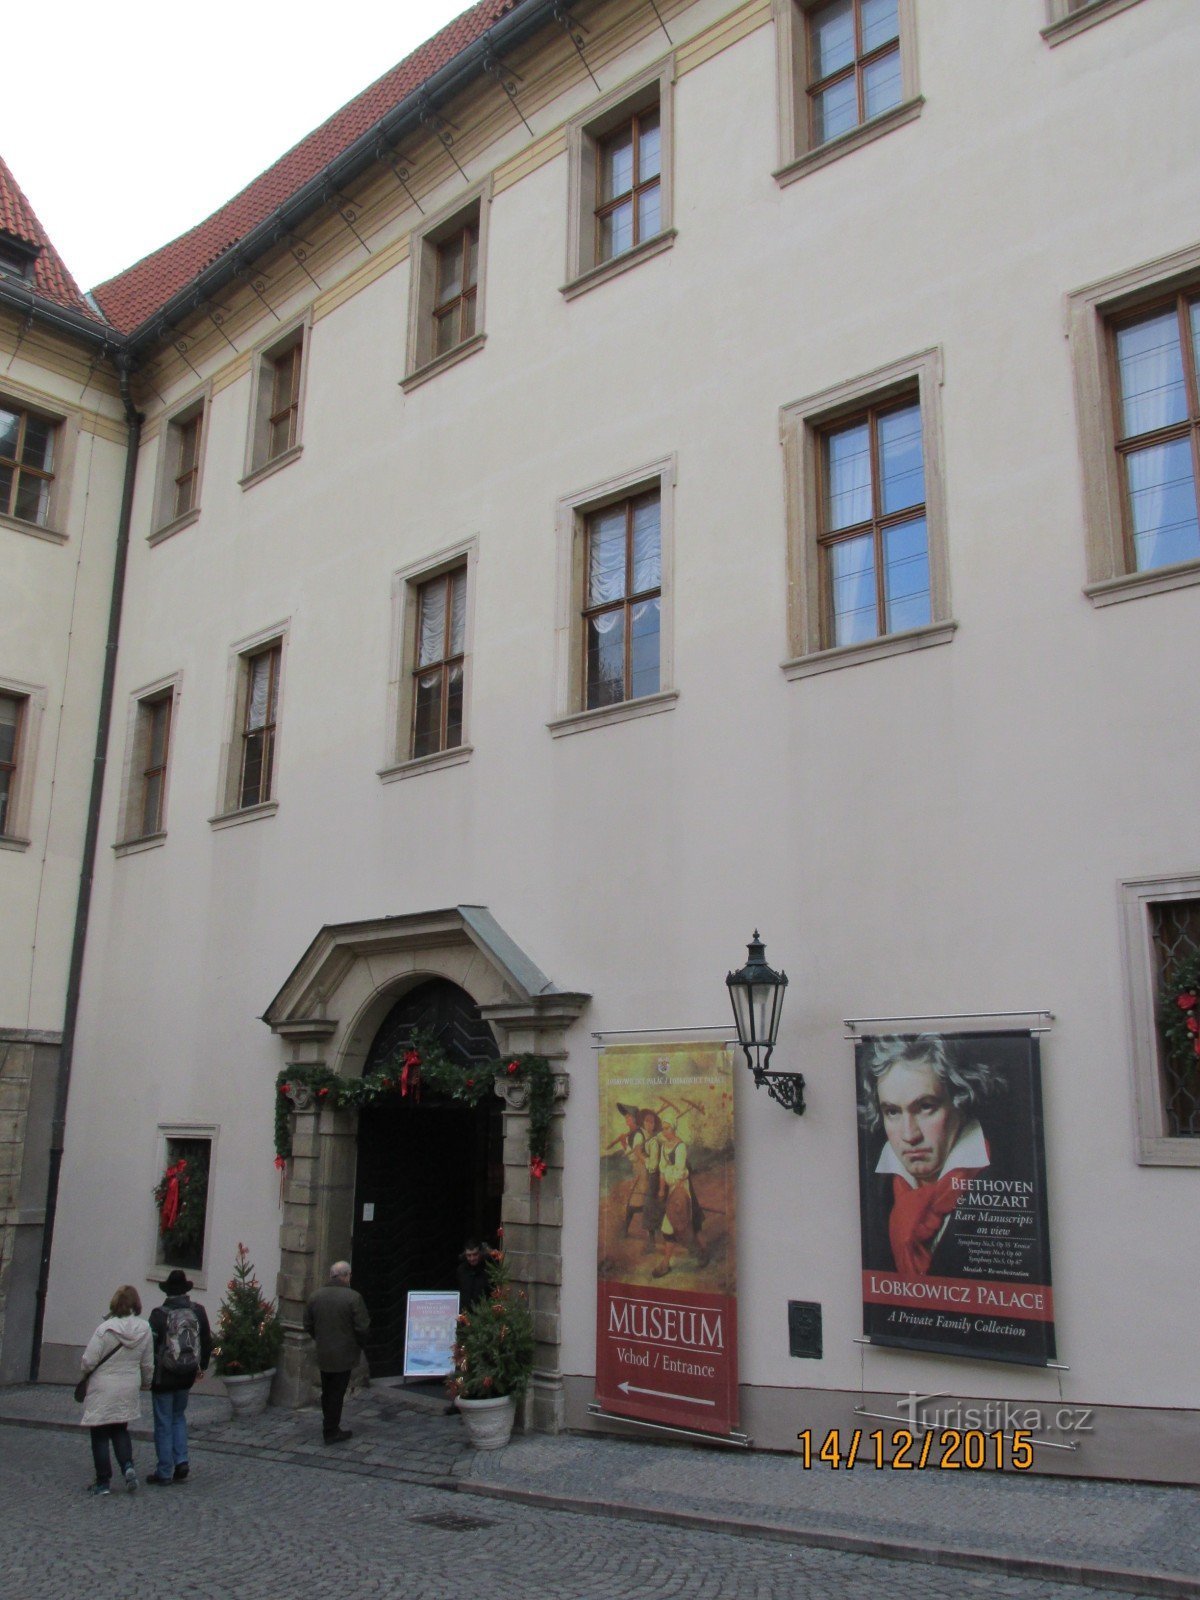 Muzeum v Lobkowiczkém paláci